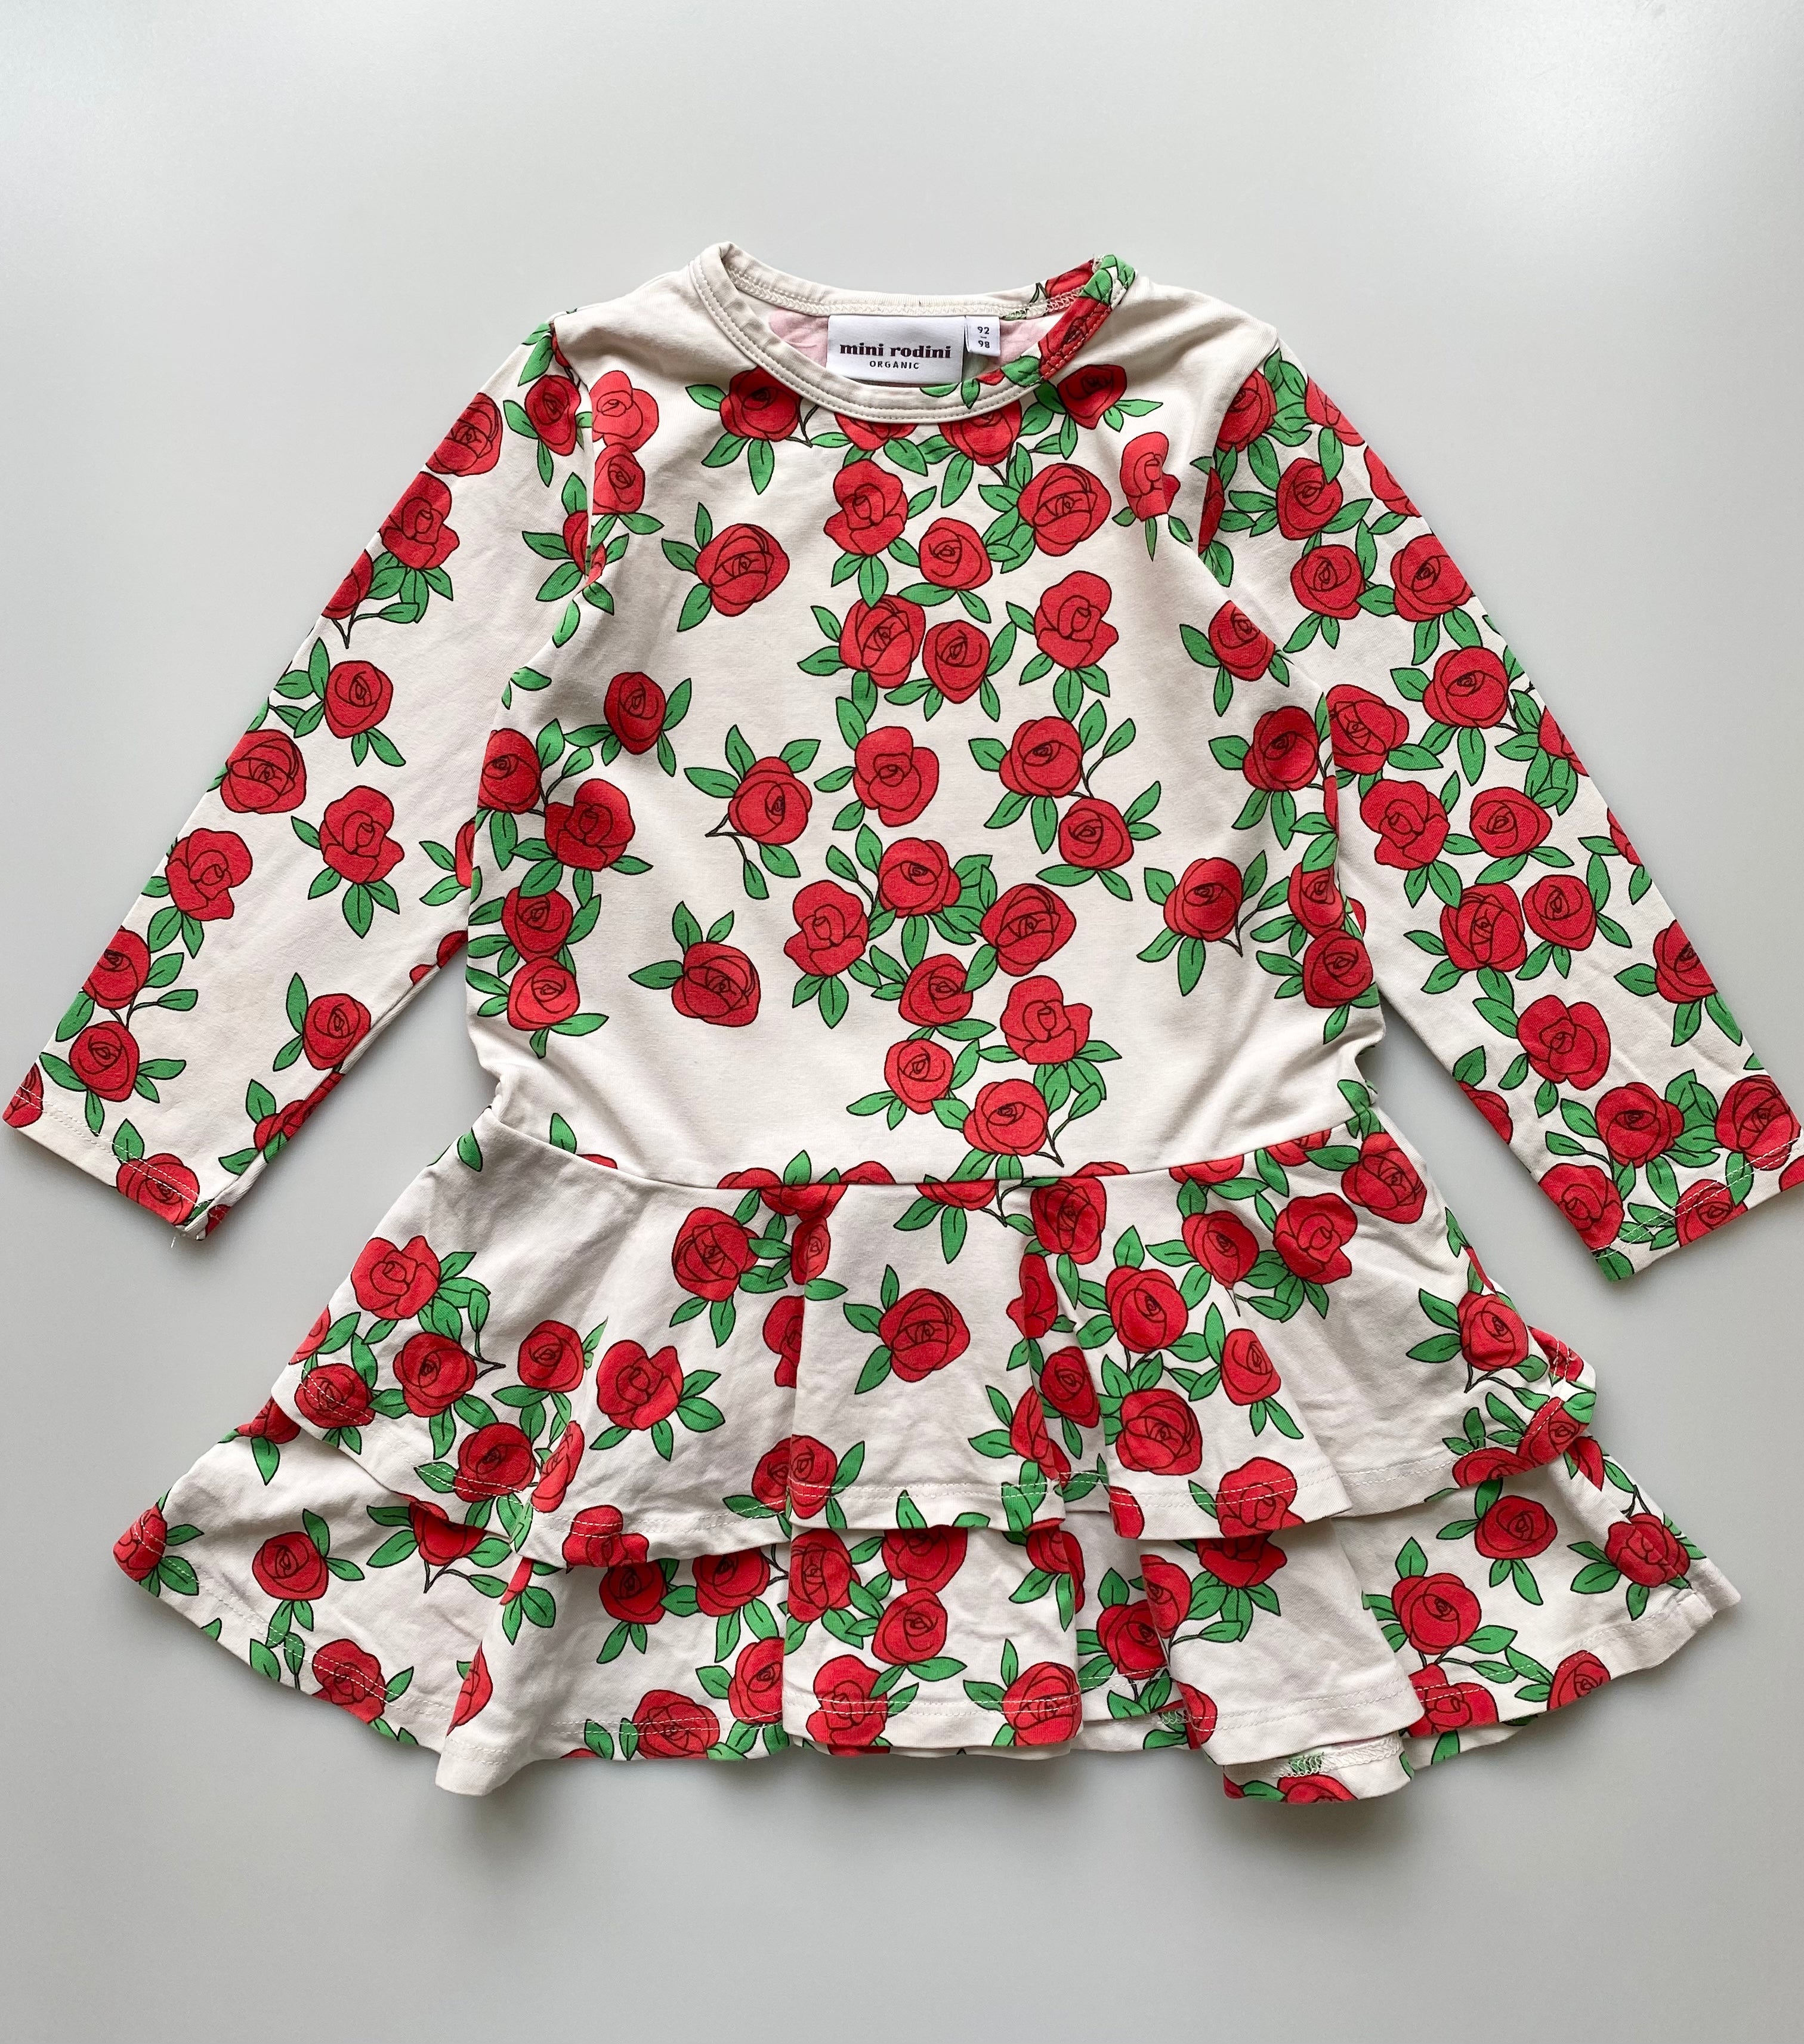 Mini Rodini Roses Frill 100% Organic Cotton Dress Age 3-4